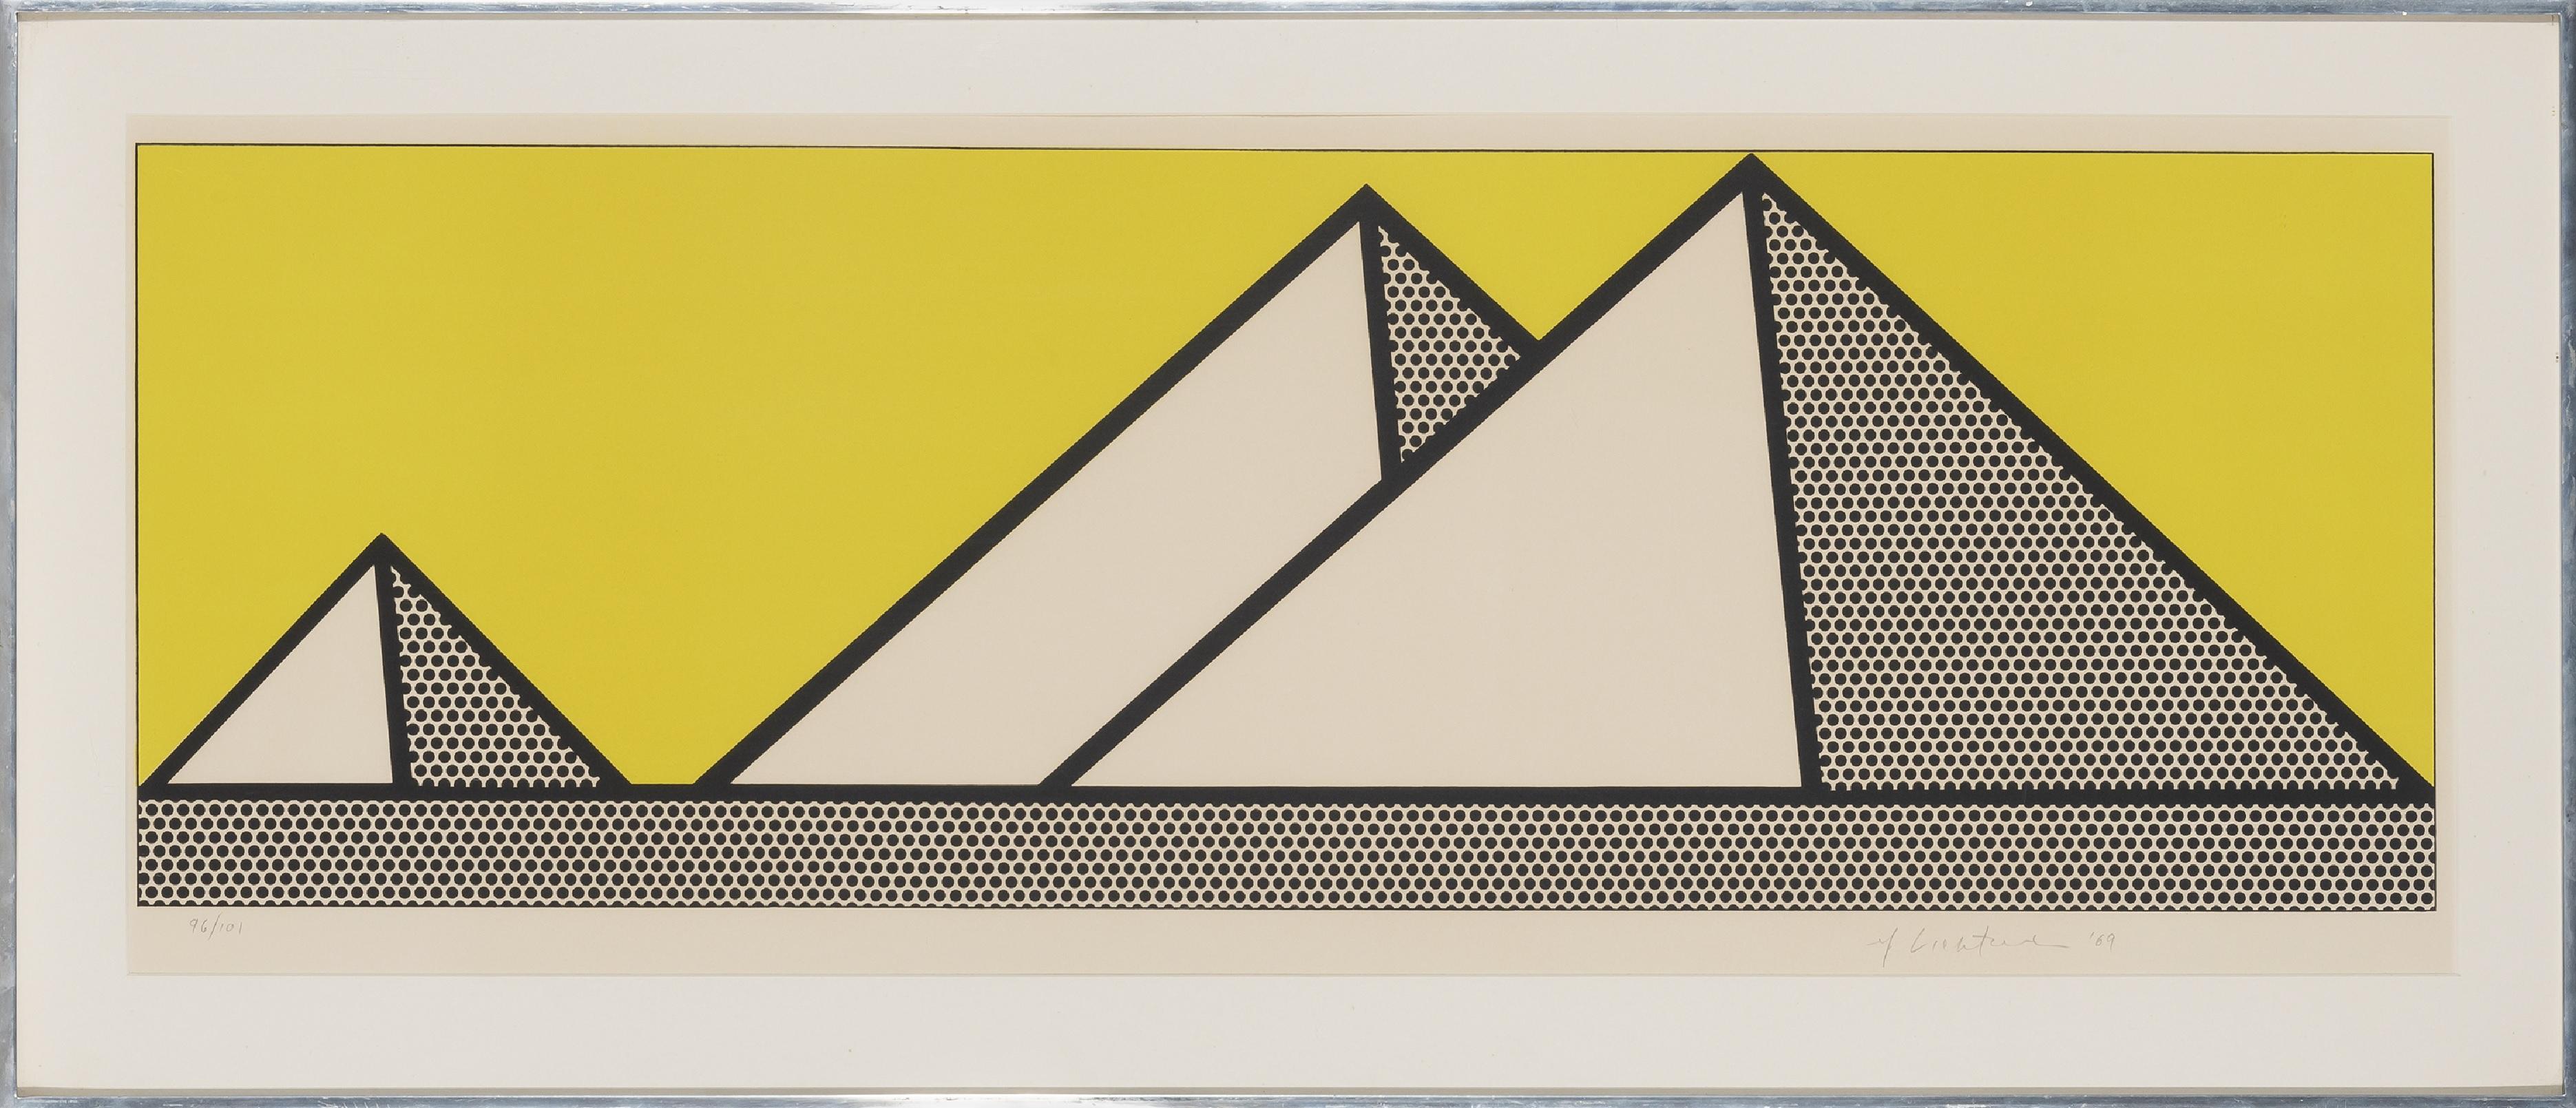 Pyramids - Print by Roy Lichtenstein